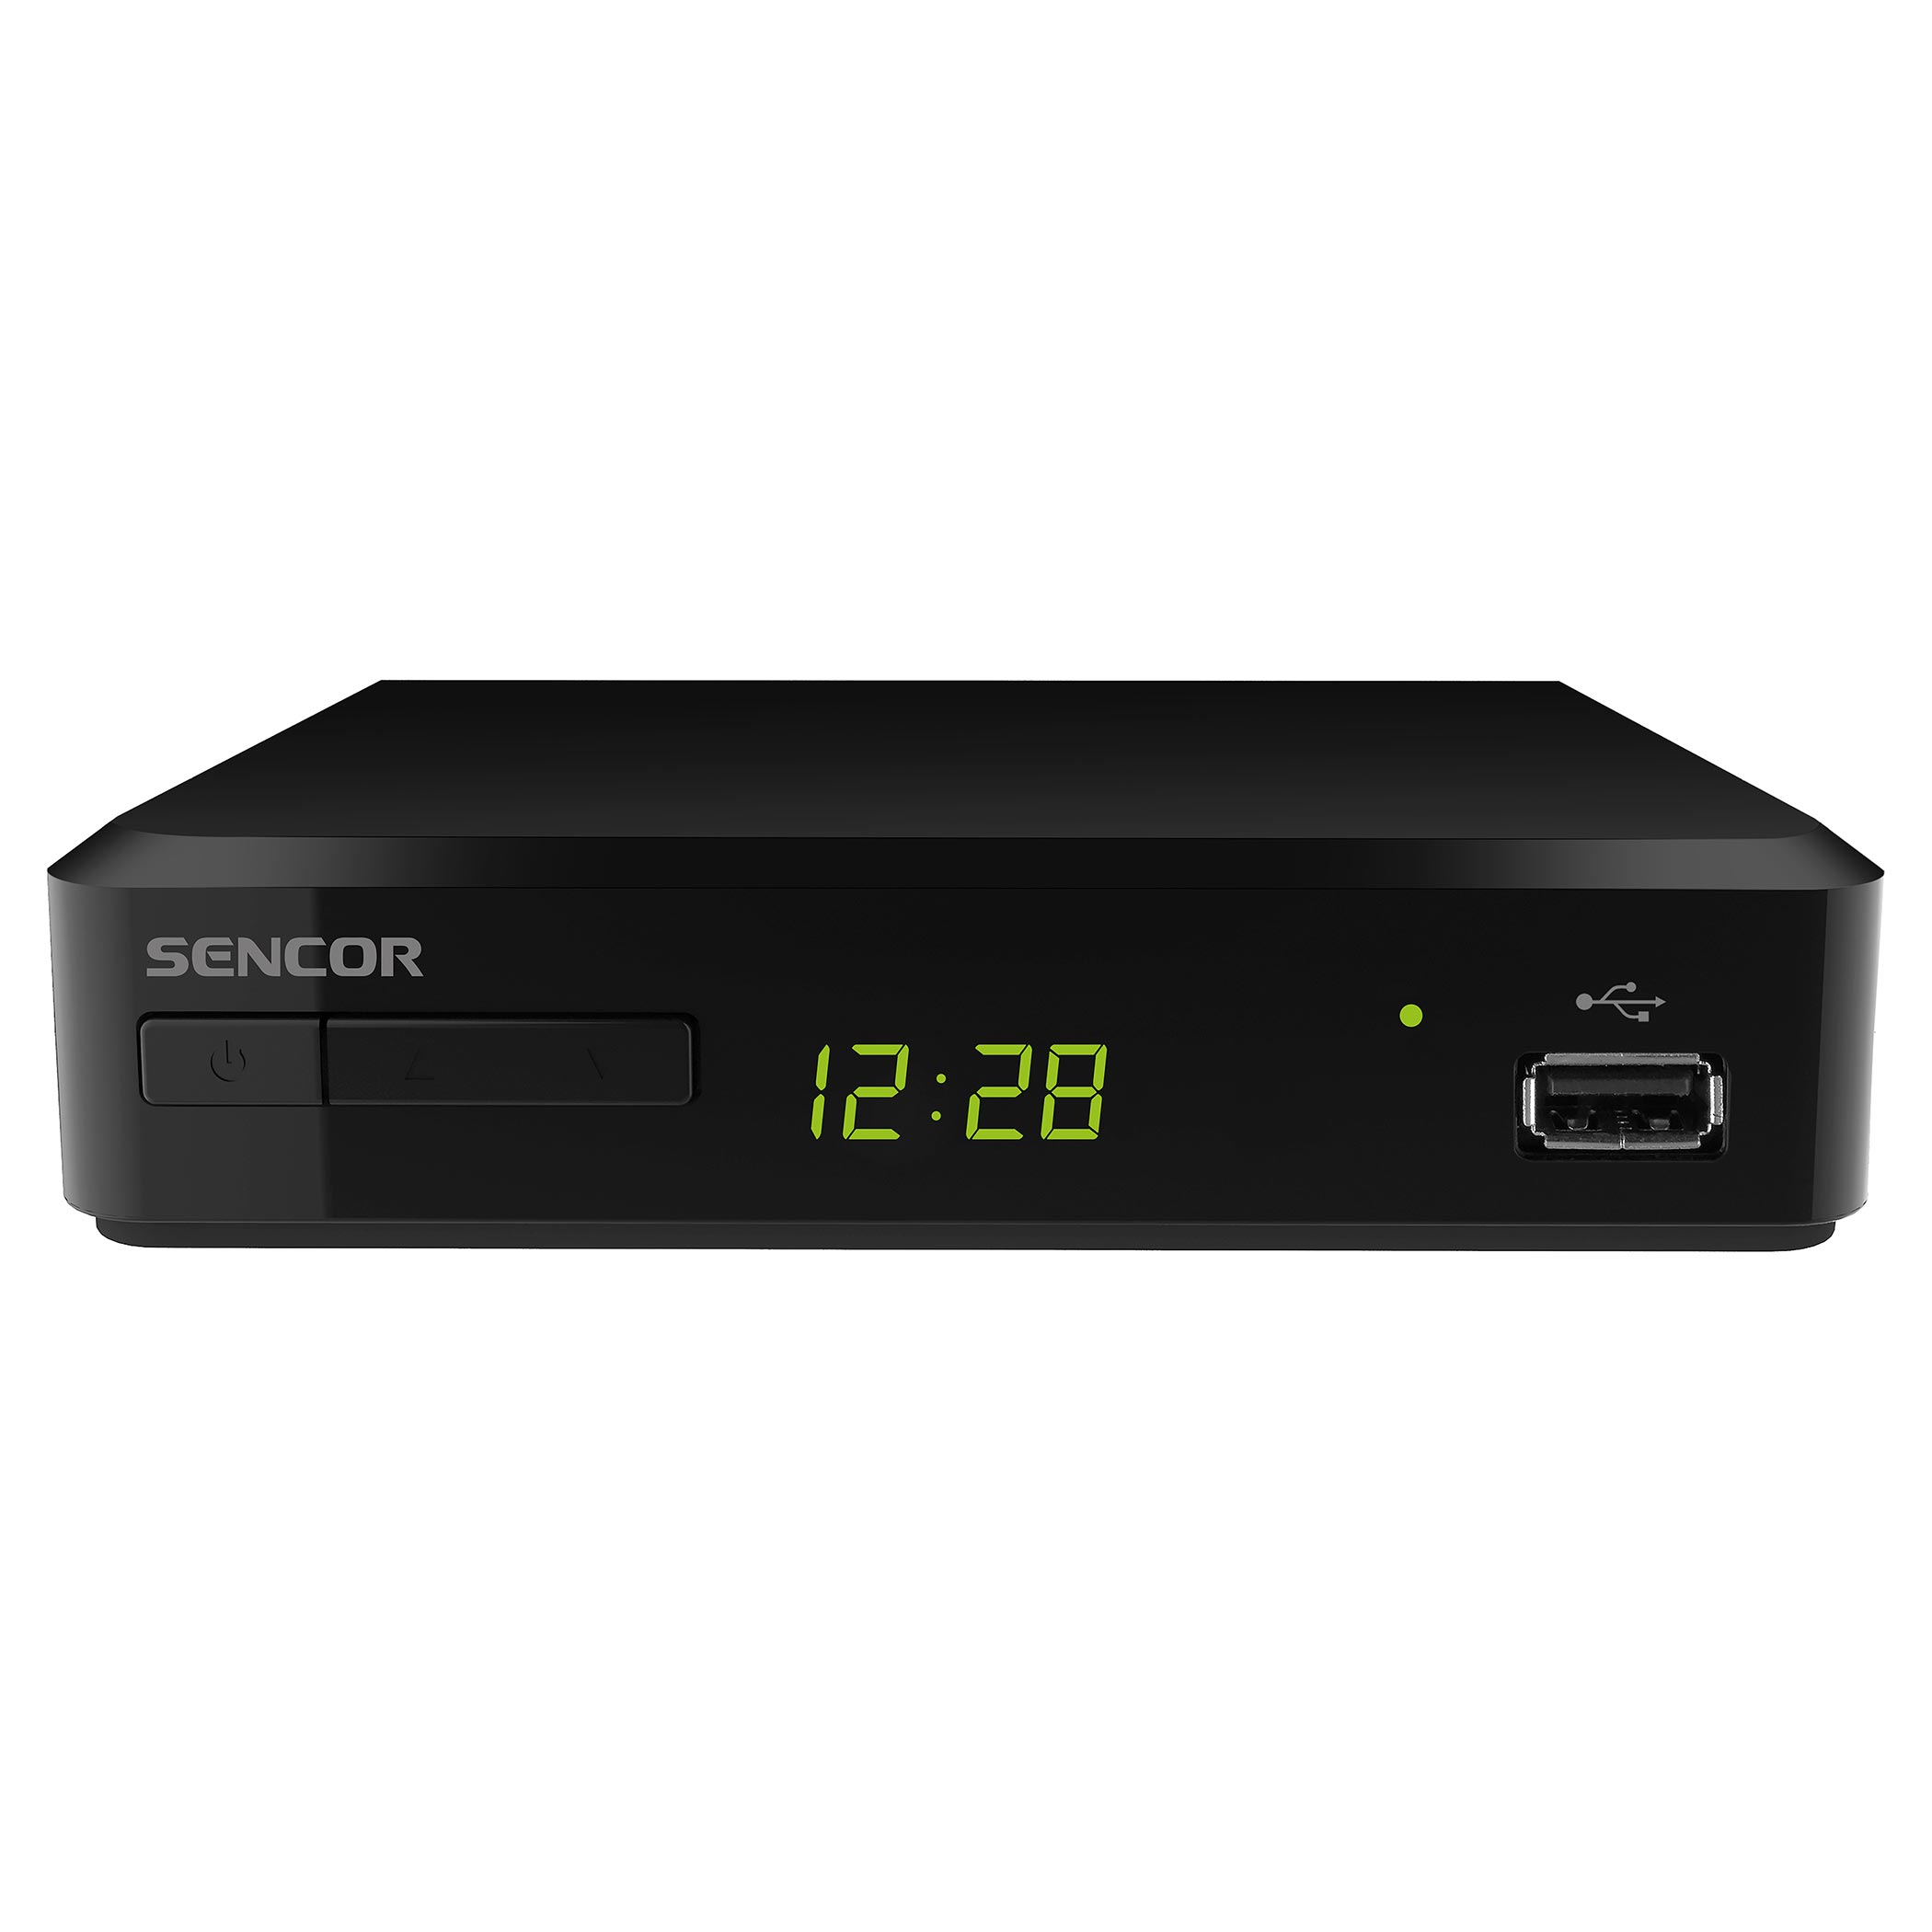 Sveon SDT8400 Receptor/Grabador TDT2